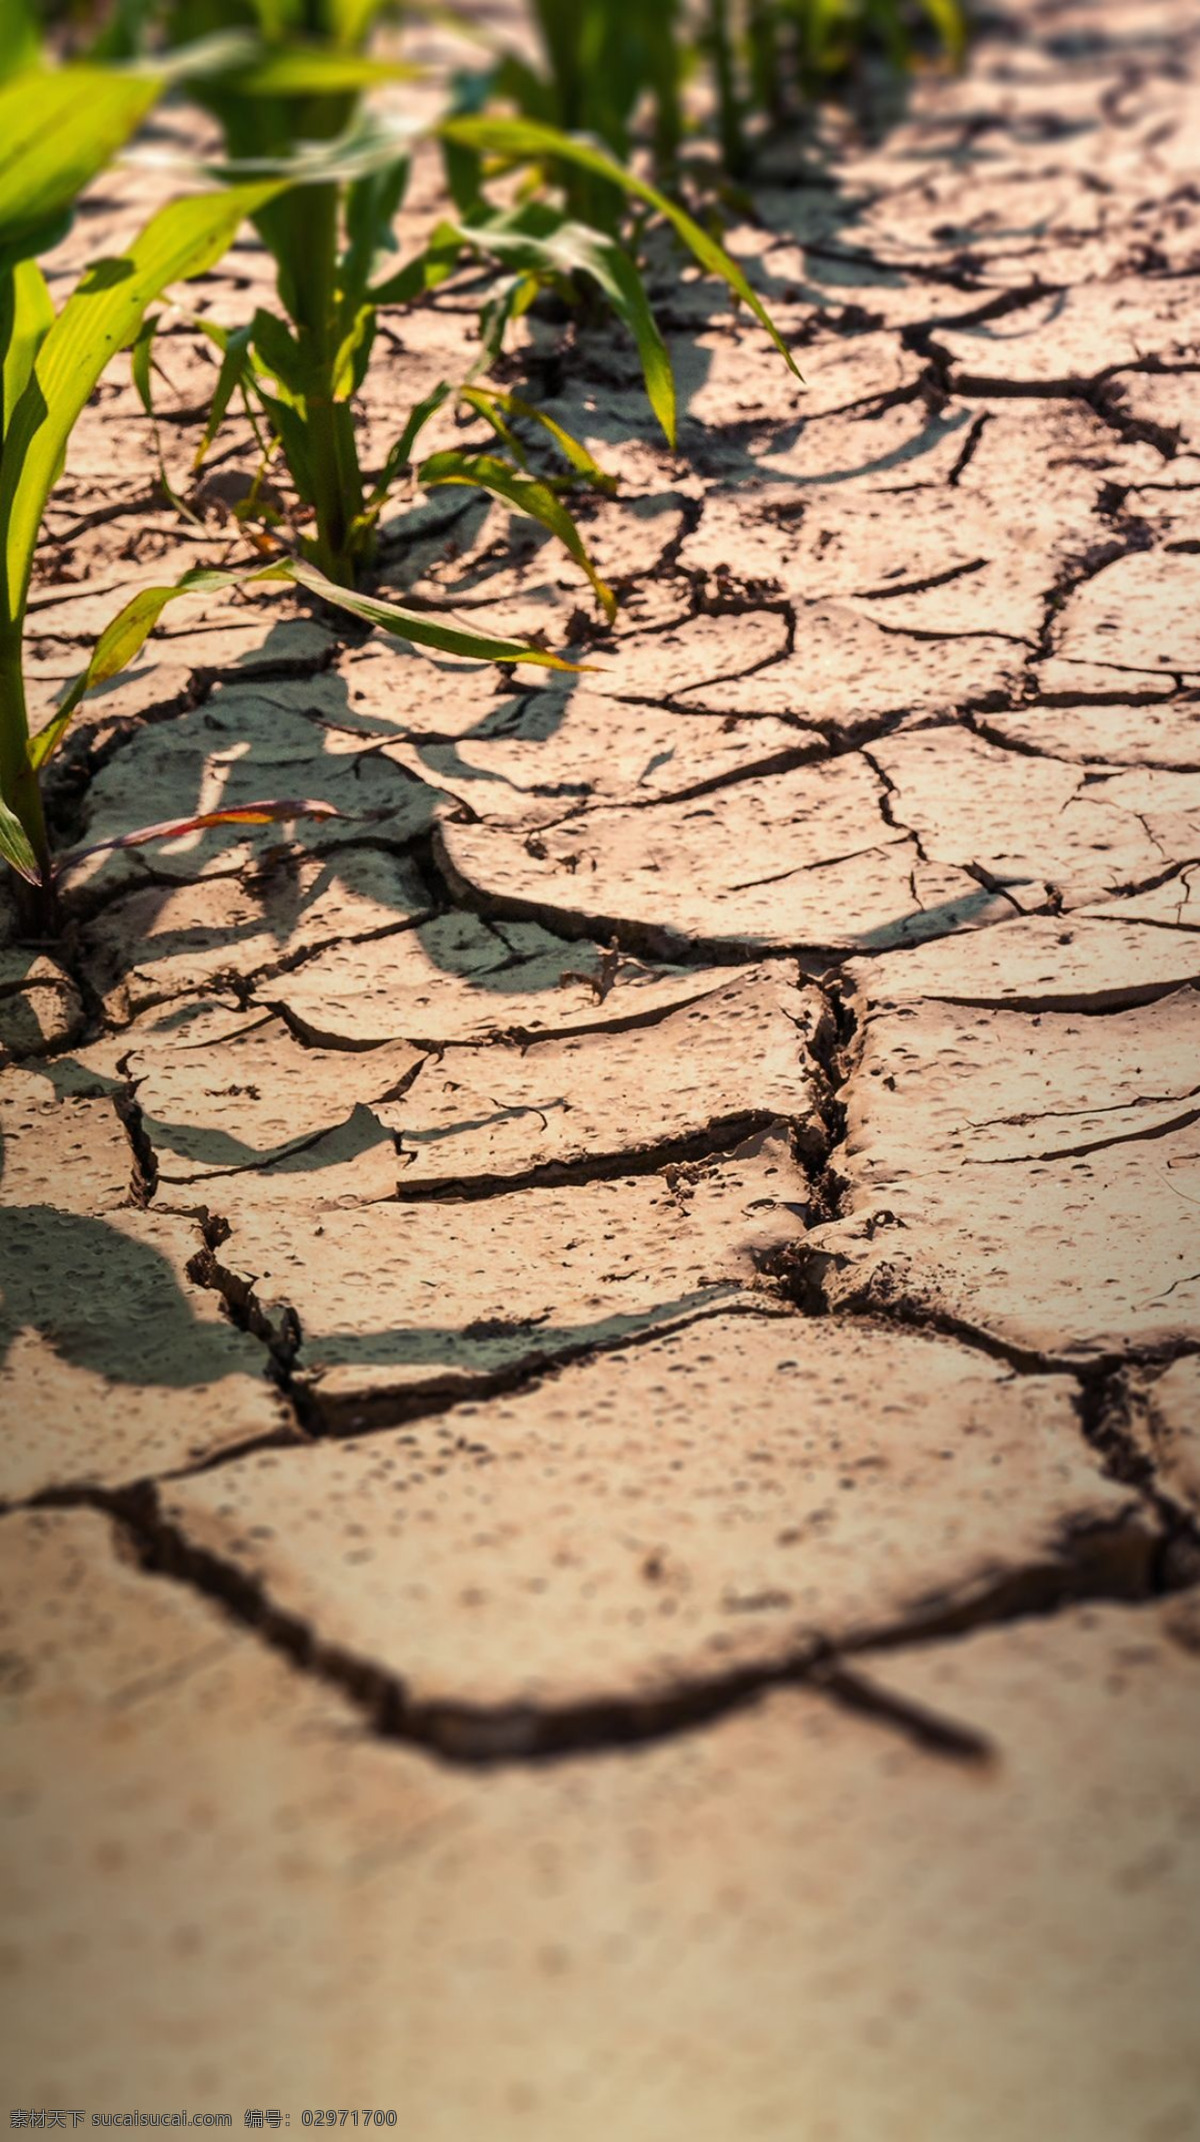 干旱 土地 背景 图 干裂 枯竭 贫瘠的土地 粮食危机 缺水 背景图 摄影类 自然景观